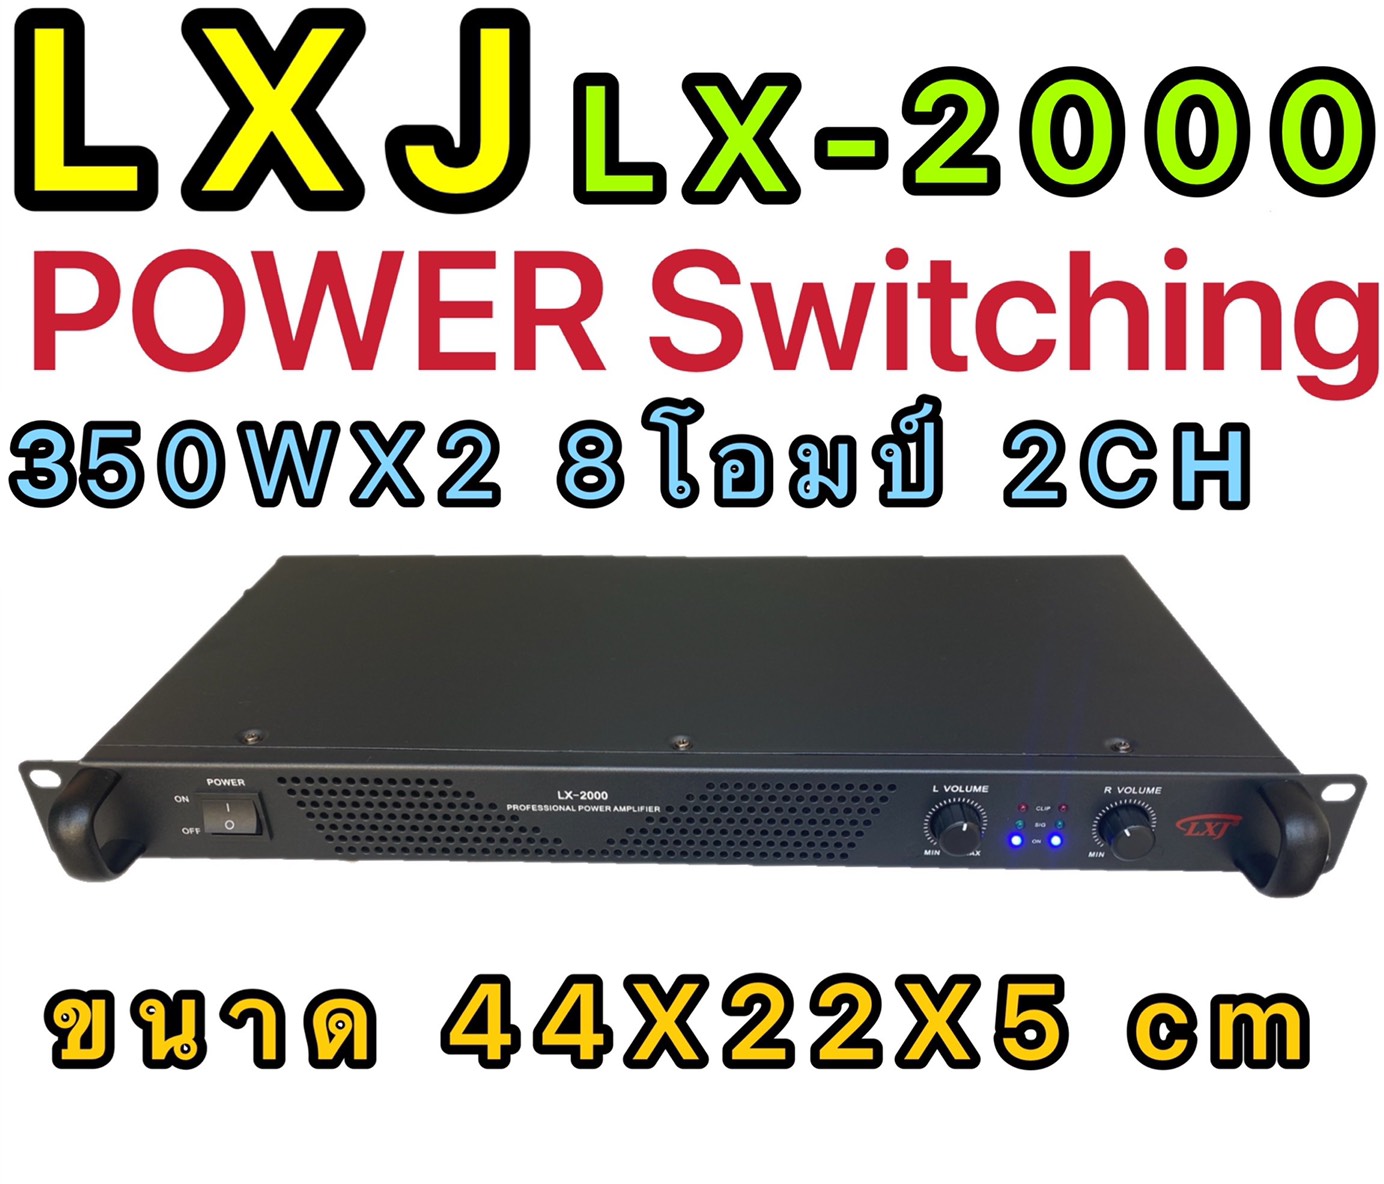 LXJ LX-2000 POWER Switching เพาเวอร์แอมป์ 700วัตต์รุ่น LX-2000Max Powet:350W*2 ที่ 8 โอมป์ 2CH